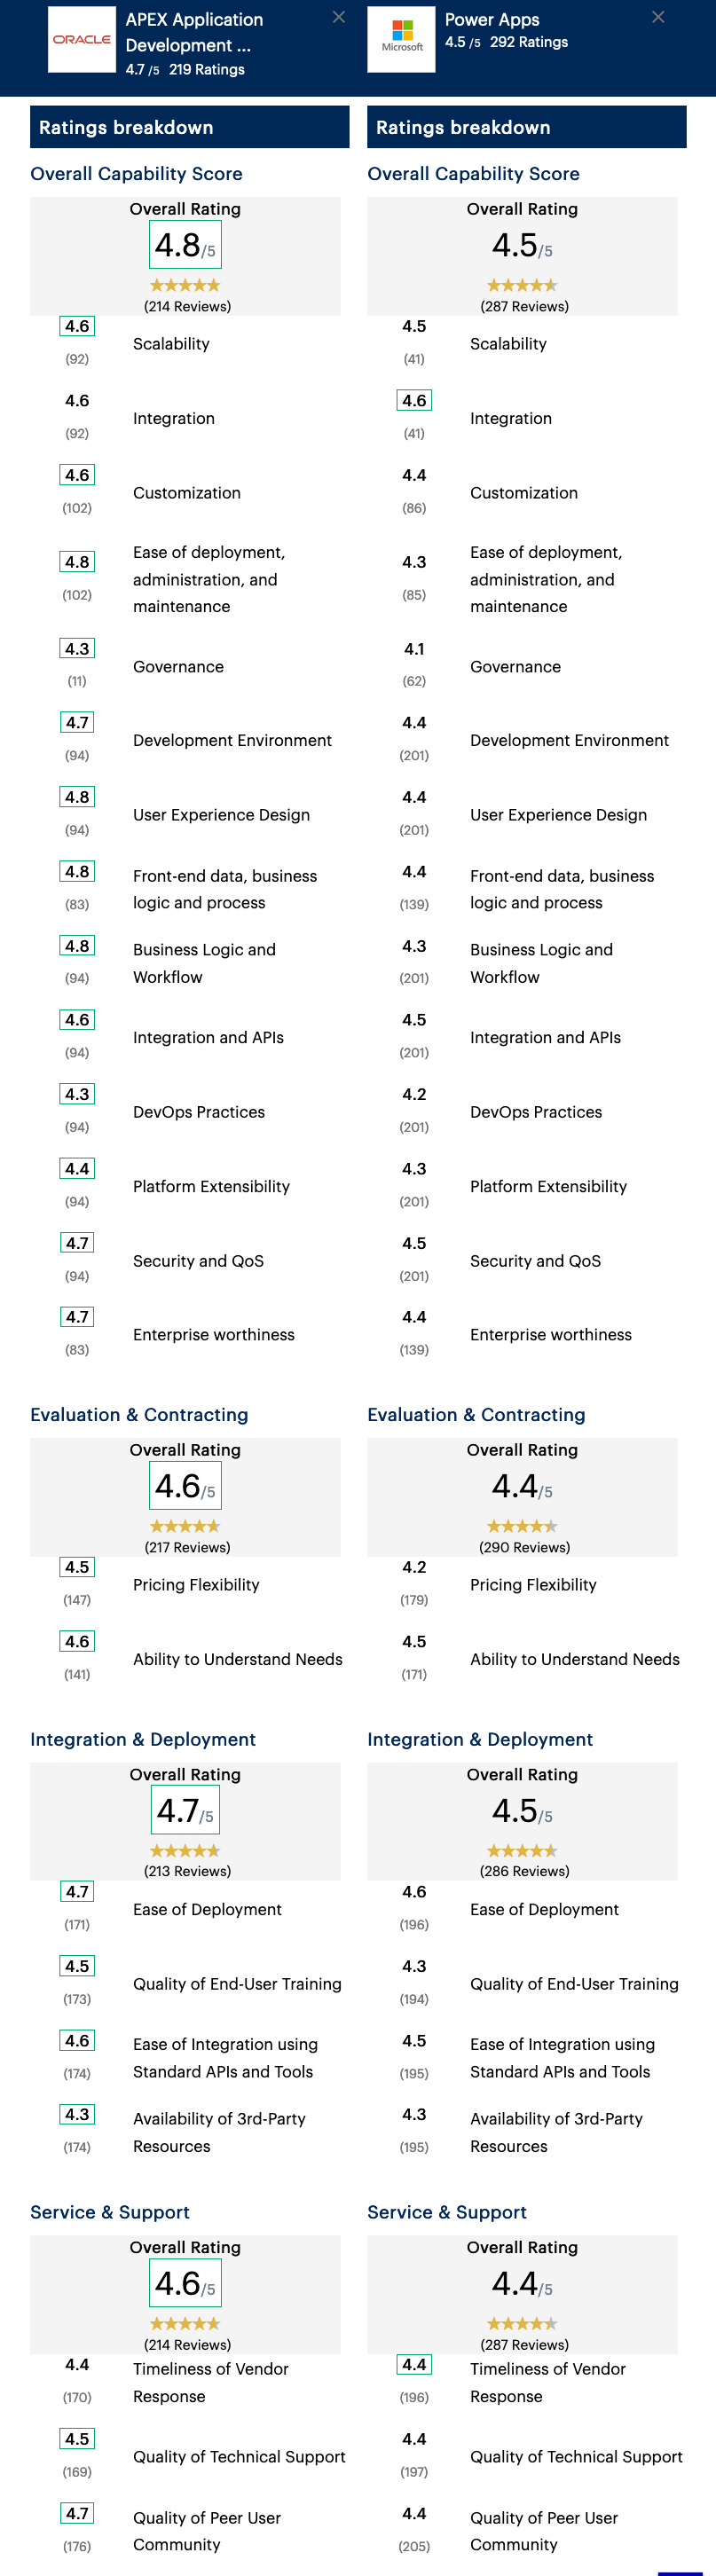 Screenshot of Gartner's comparison of ratings breakdown between Oracle APEX and Microsoft PowerApps